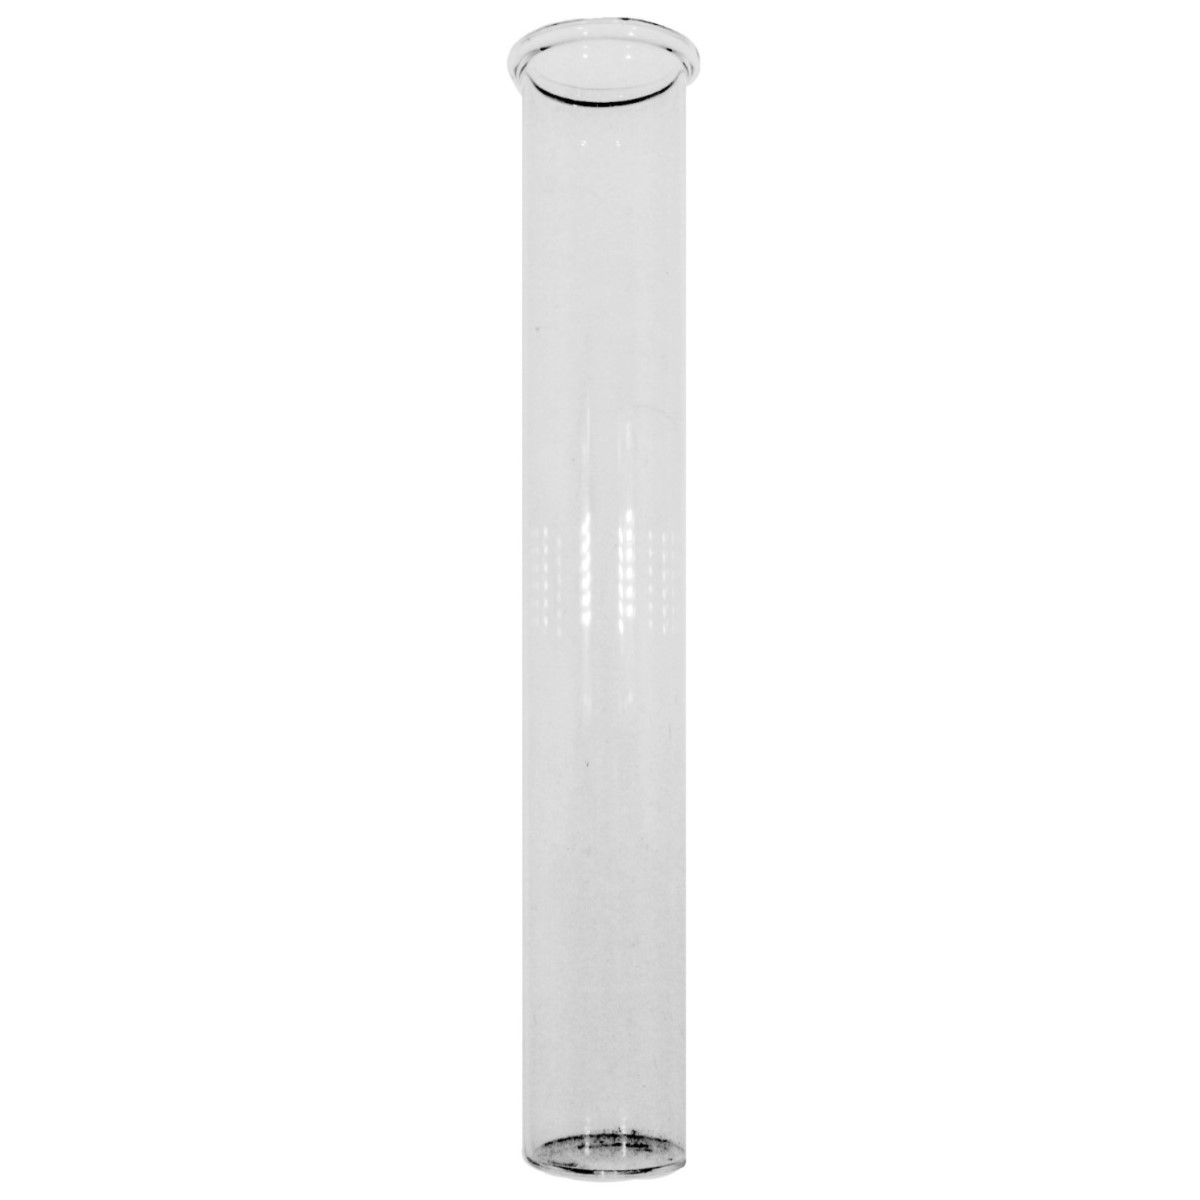 Eprubeta sticla baza plata 2x16cm Meyco 63421